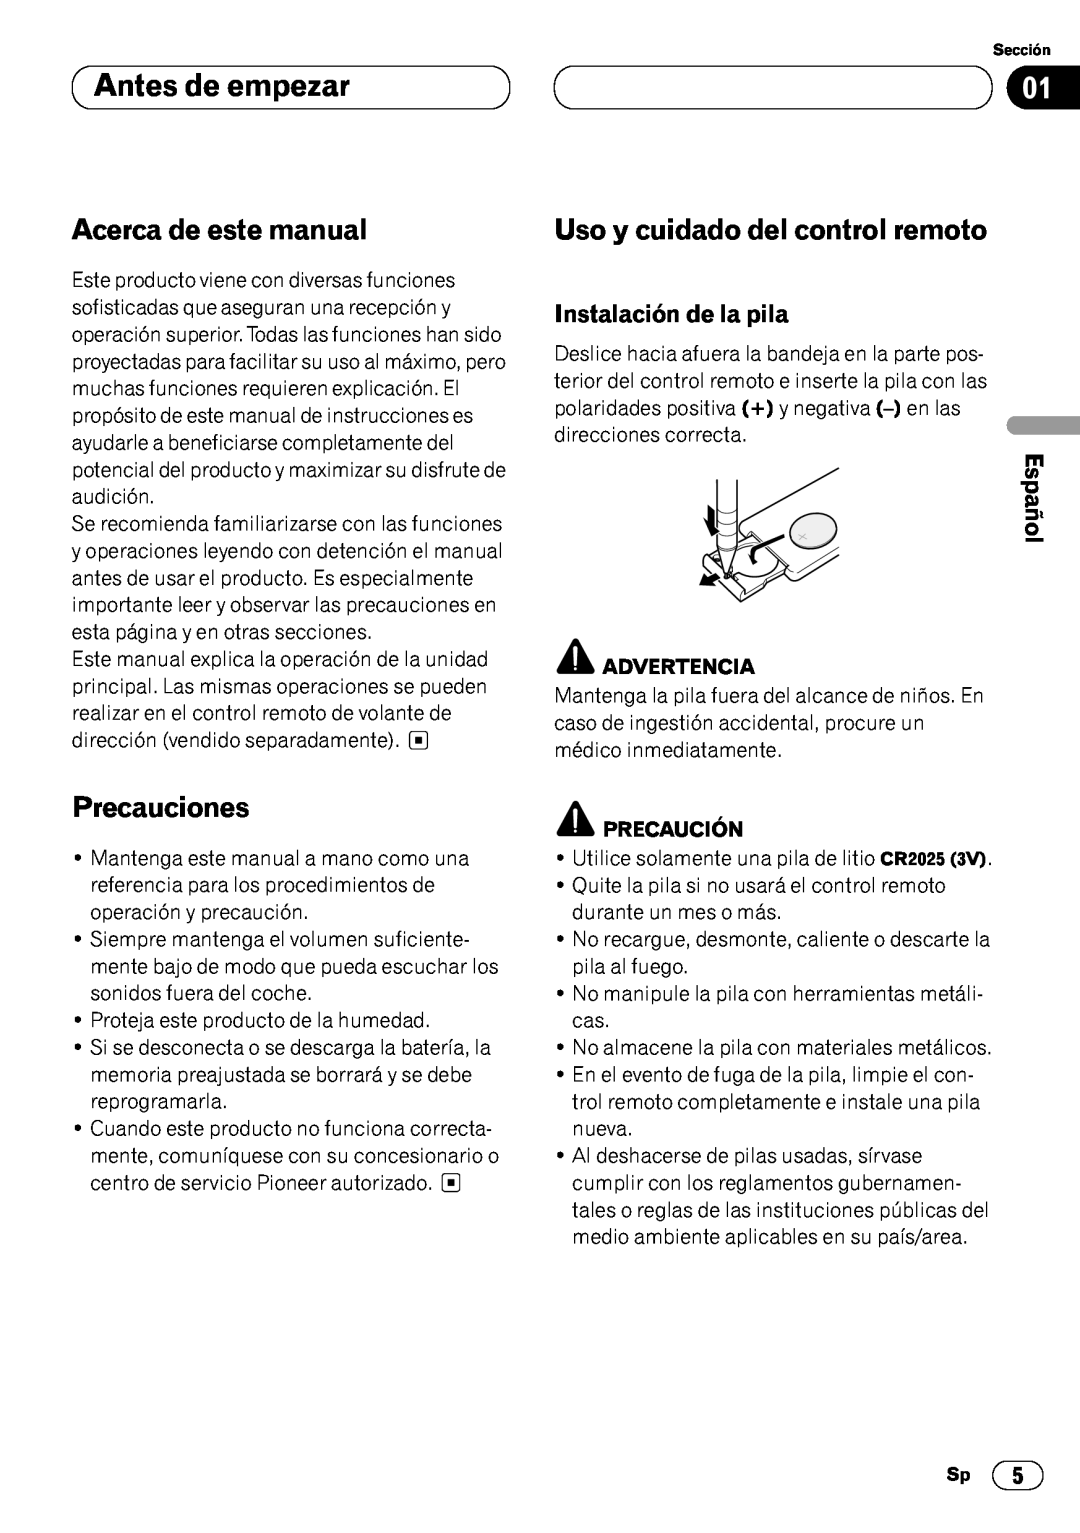 Pioneer DEH-P6450 Antes de empezar, Acerca de este manual, Precauciones, Uso y cuidado del control remoto, Español 